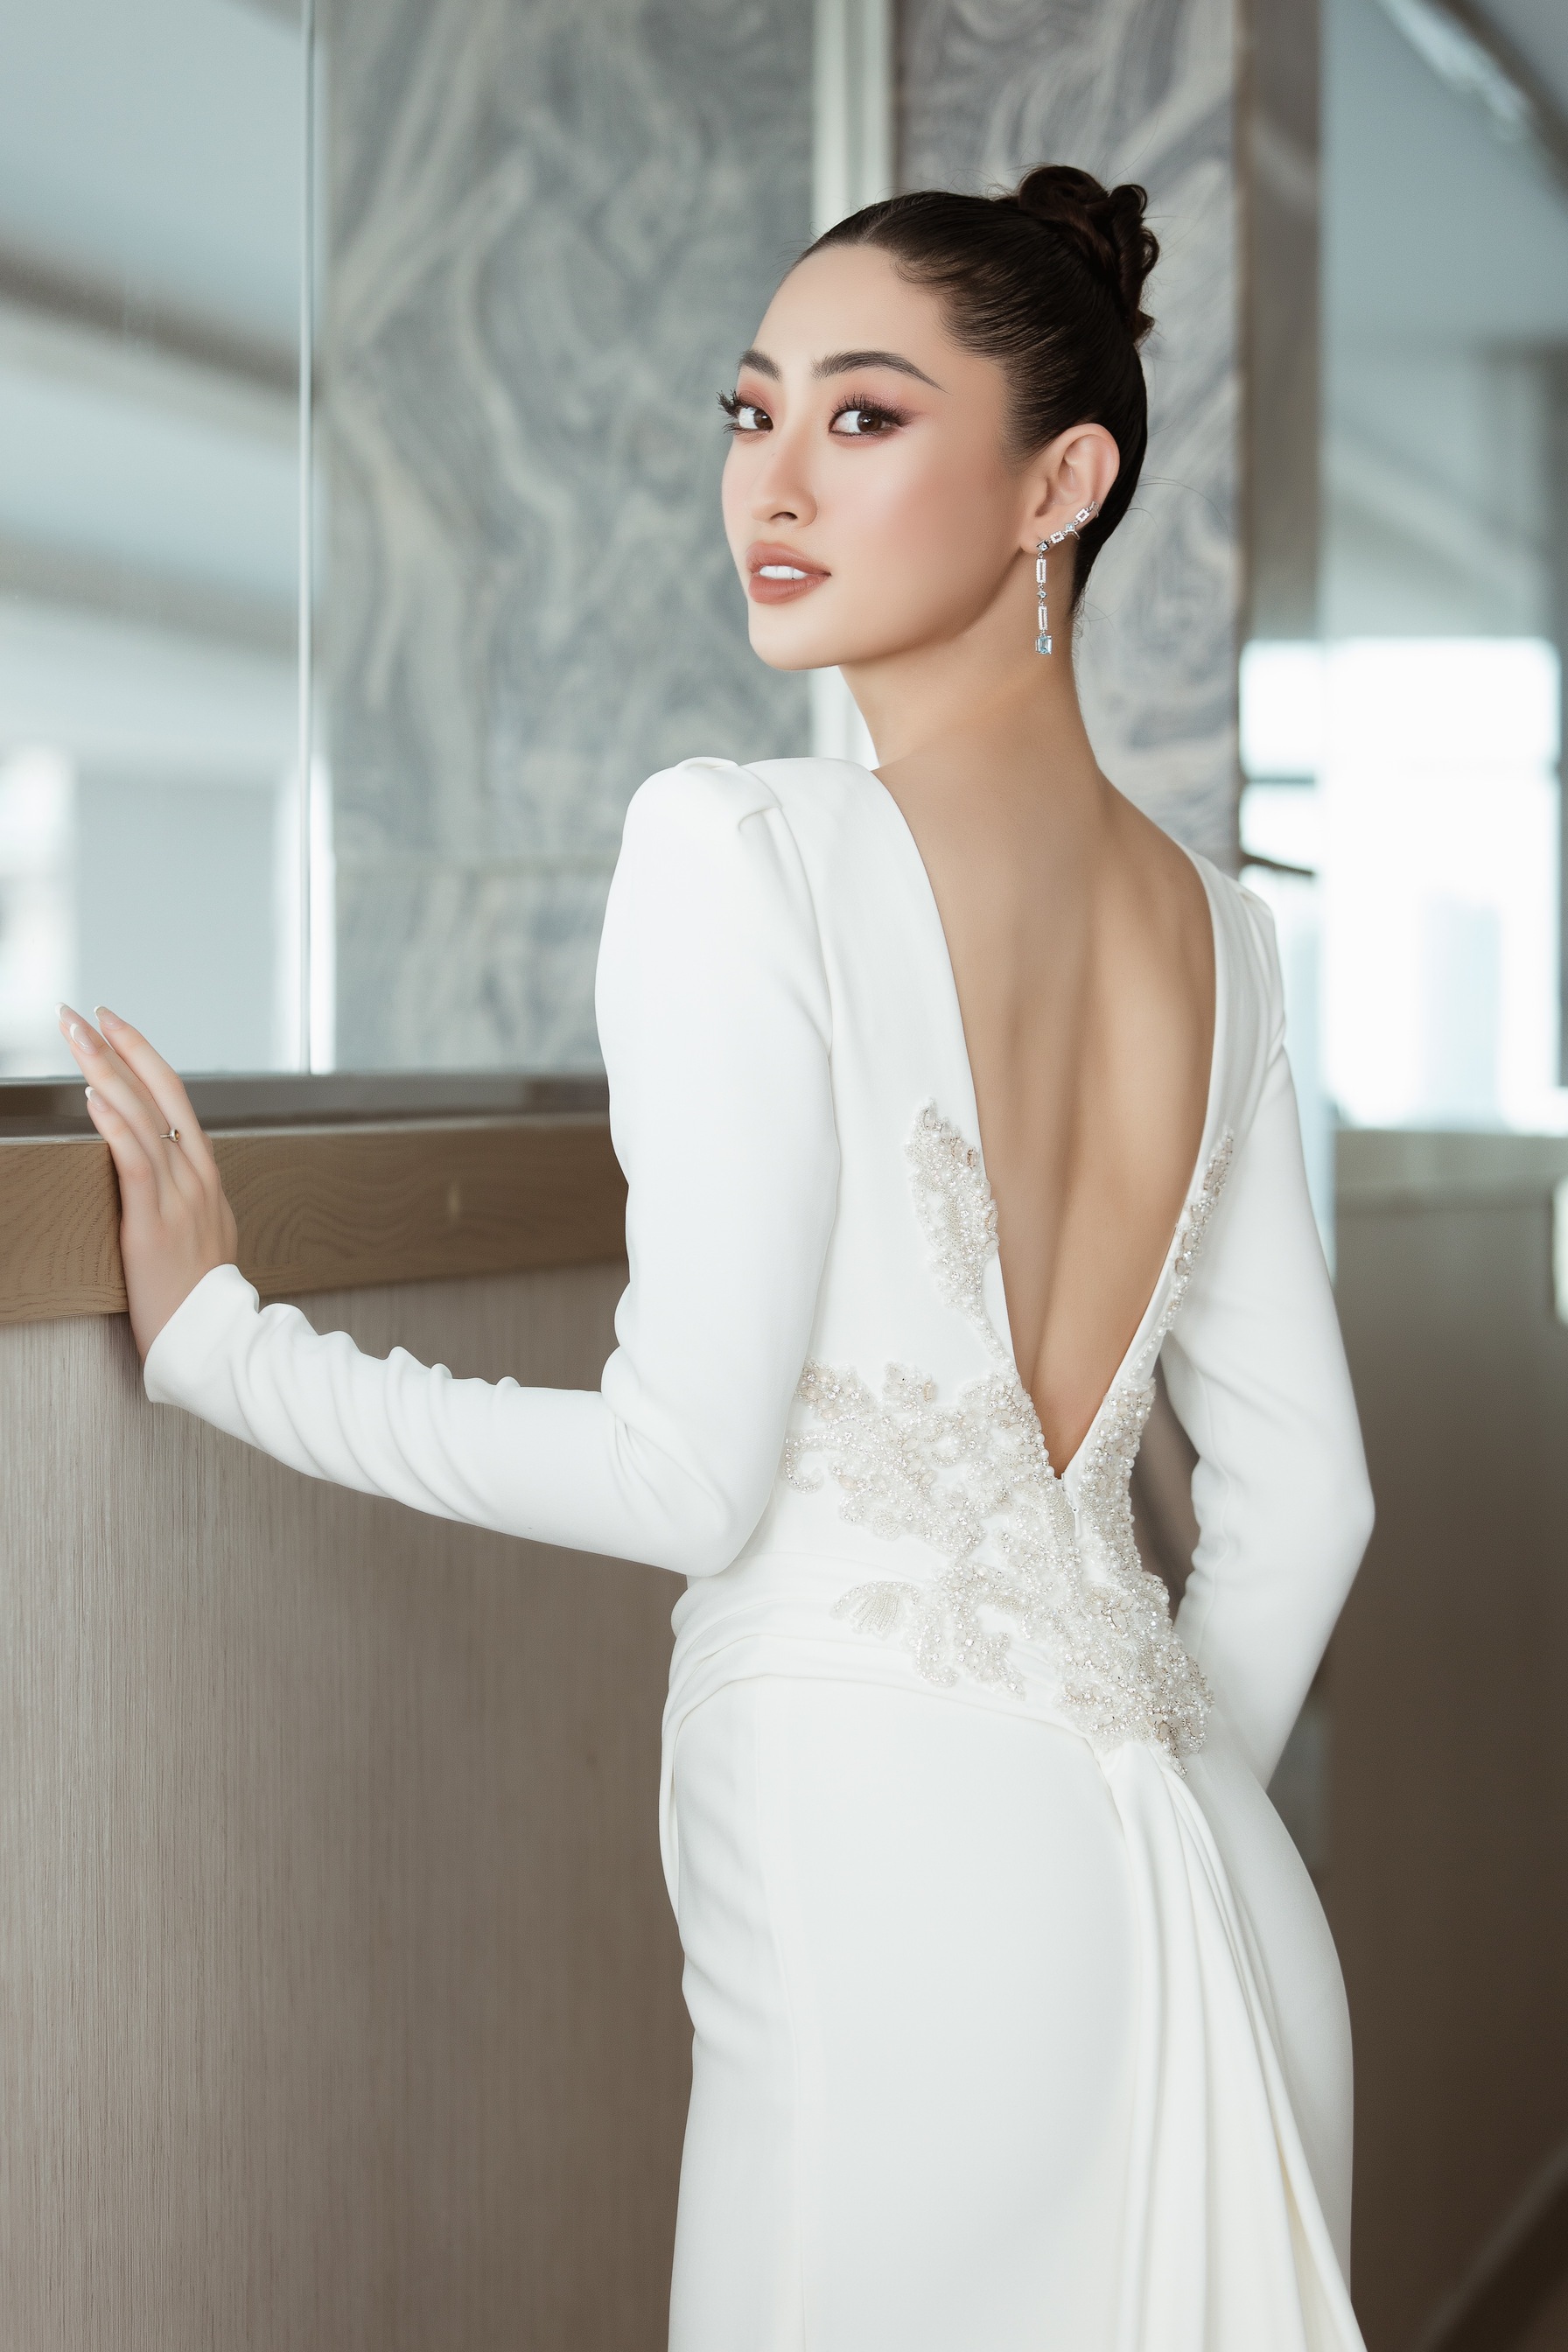 Hoa hậu Lương Thùy Linh quyến rũ hút ánh nhìn khi diện váy cưới hậu Valentine - Ảnh 4.